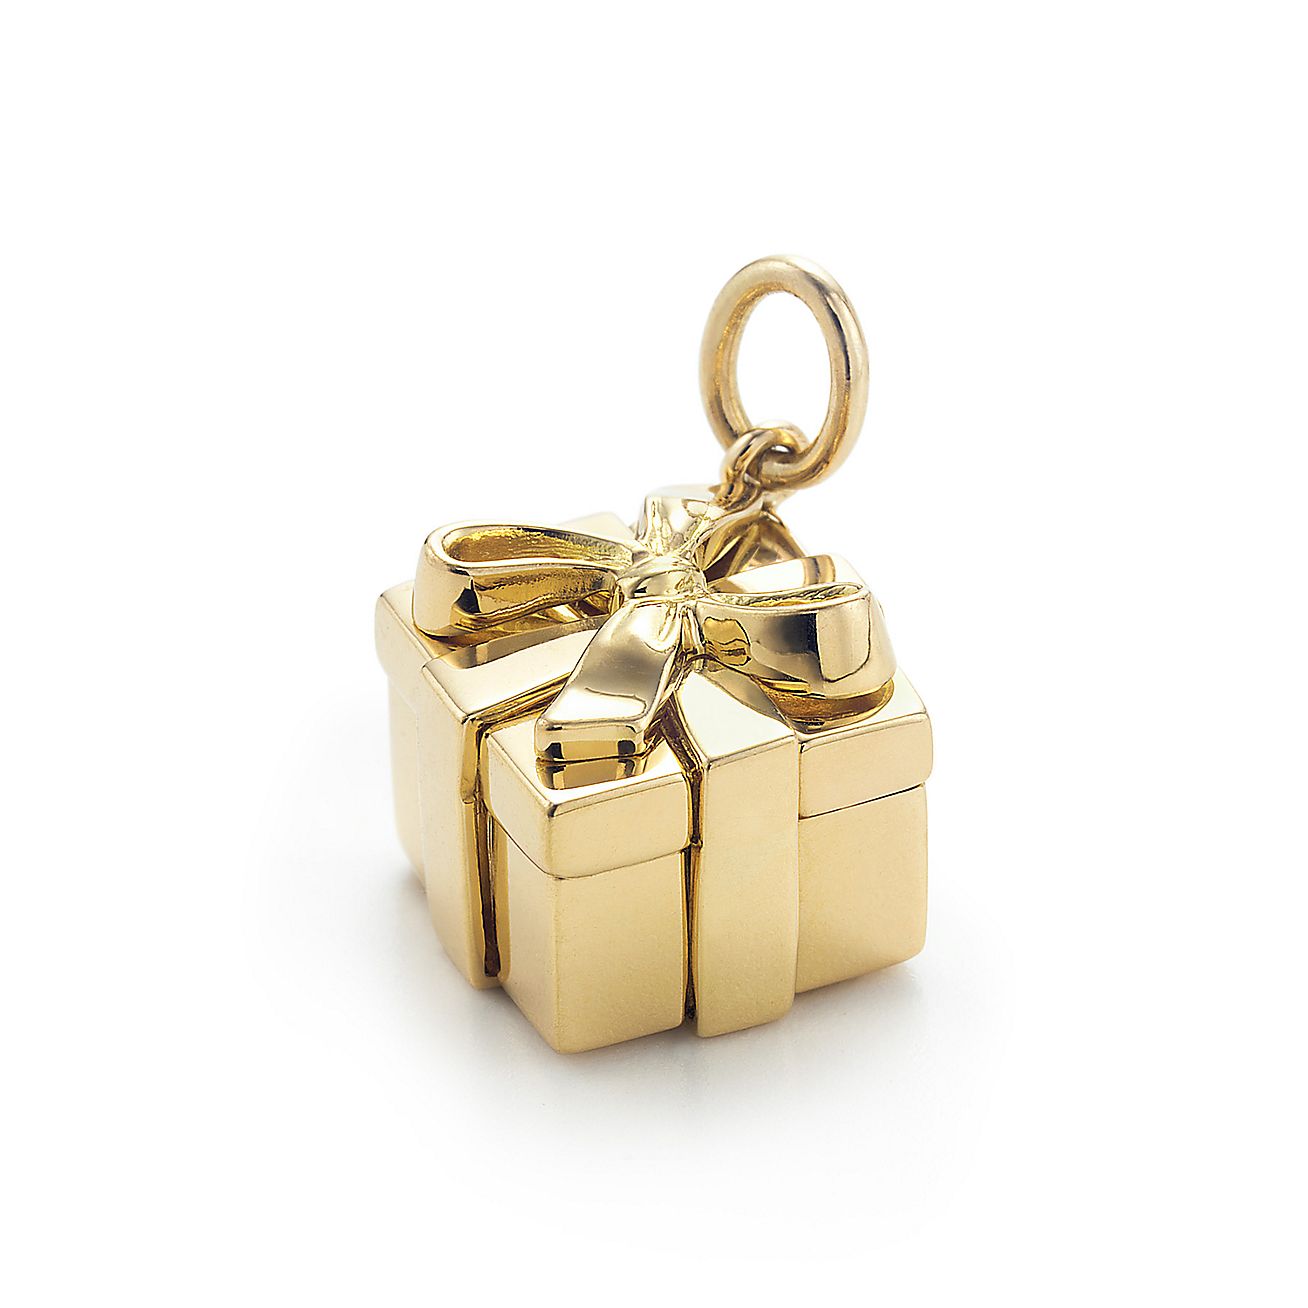 Tiffany Box charm. 18k gold. Tiffany & Co.